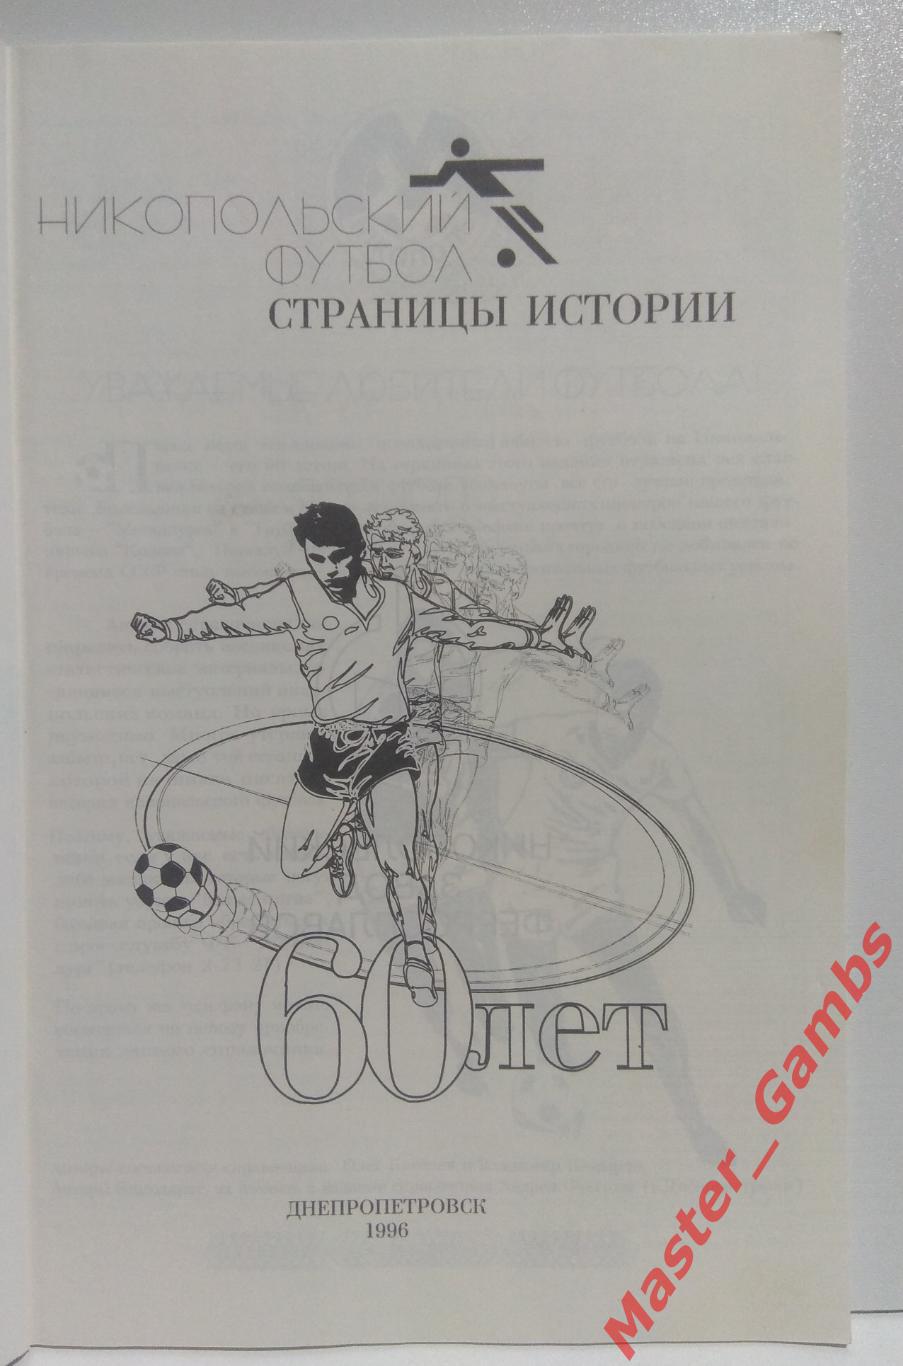 Киселев, Кокырло - Никопольский футбол. Страницы истории 1936 - 1996 г.г./ 1996* 1